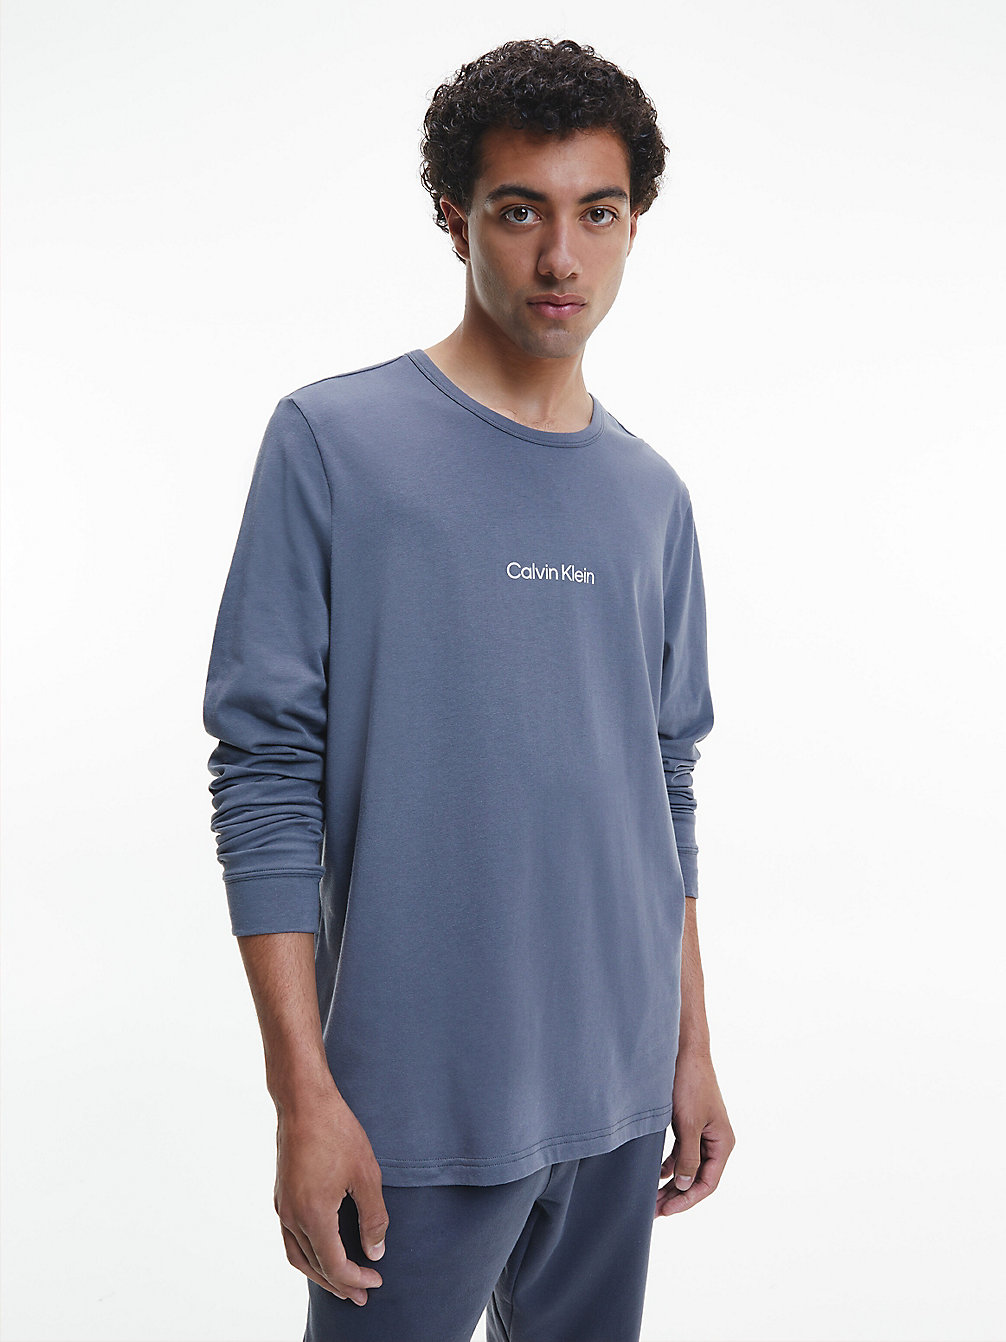 SLEEK GREY > T-Shirt Z Długim Rękawem Po Domu - Modern Structure > undefined Mężczyźni - Calvin Klein